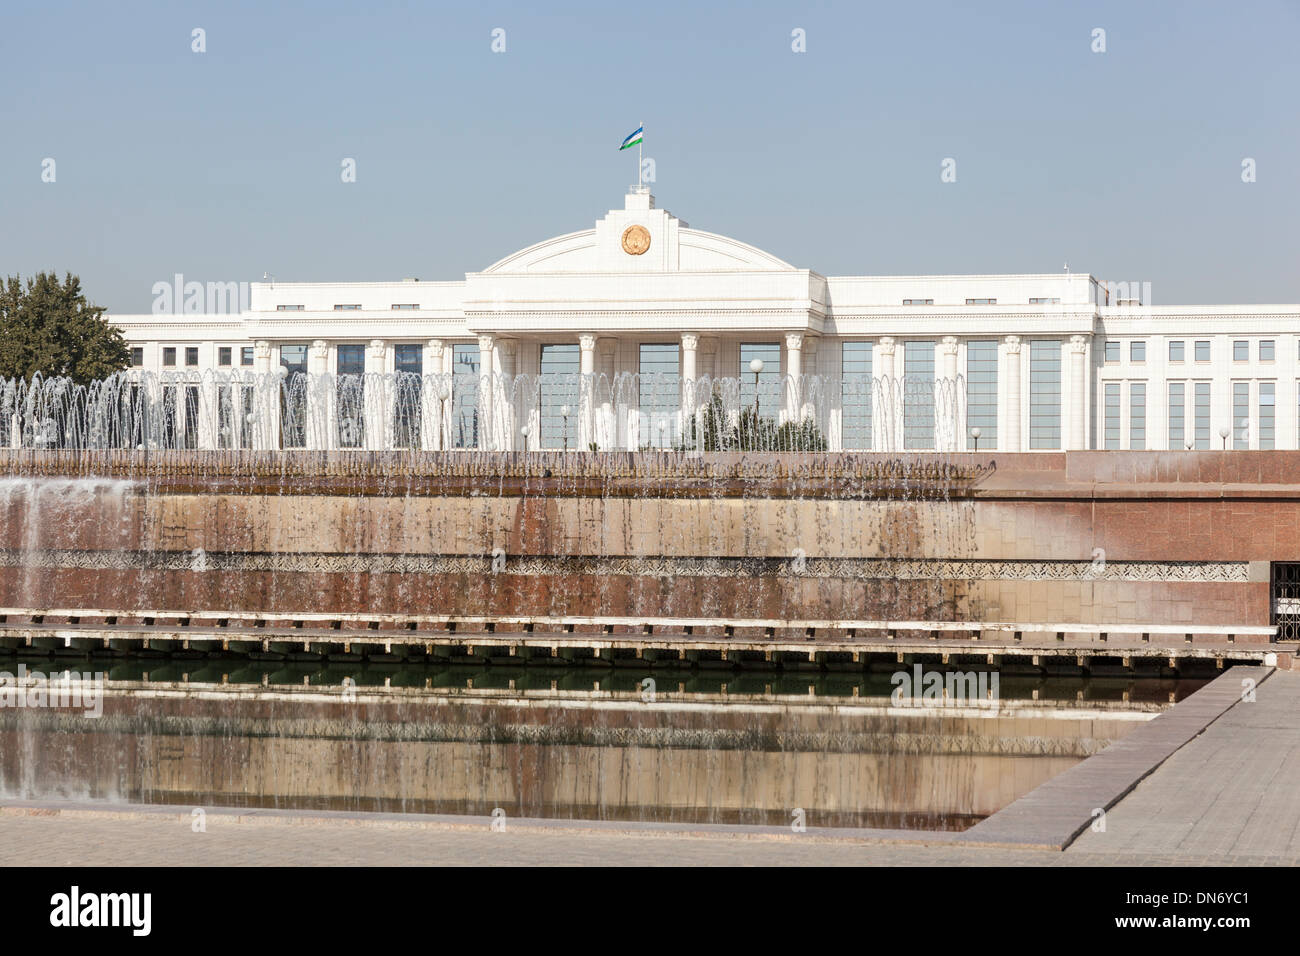 The Senate of the Republic of Uzbekistan, Independence Square, Mustakillik Maydoni, Tashkent, Uzbekistan Stock Photo